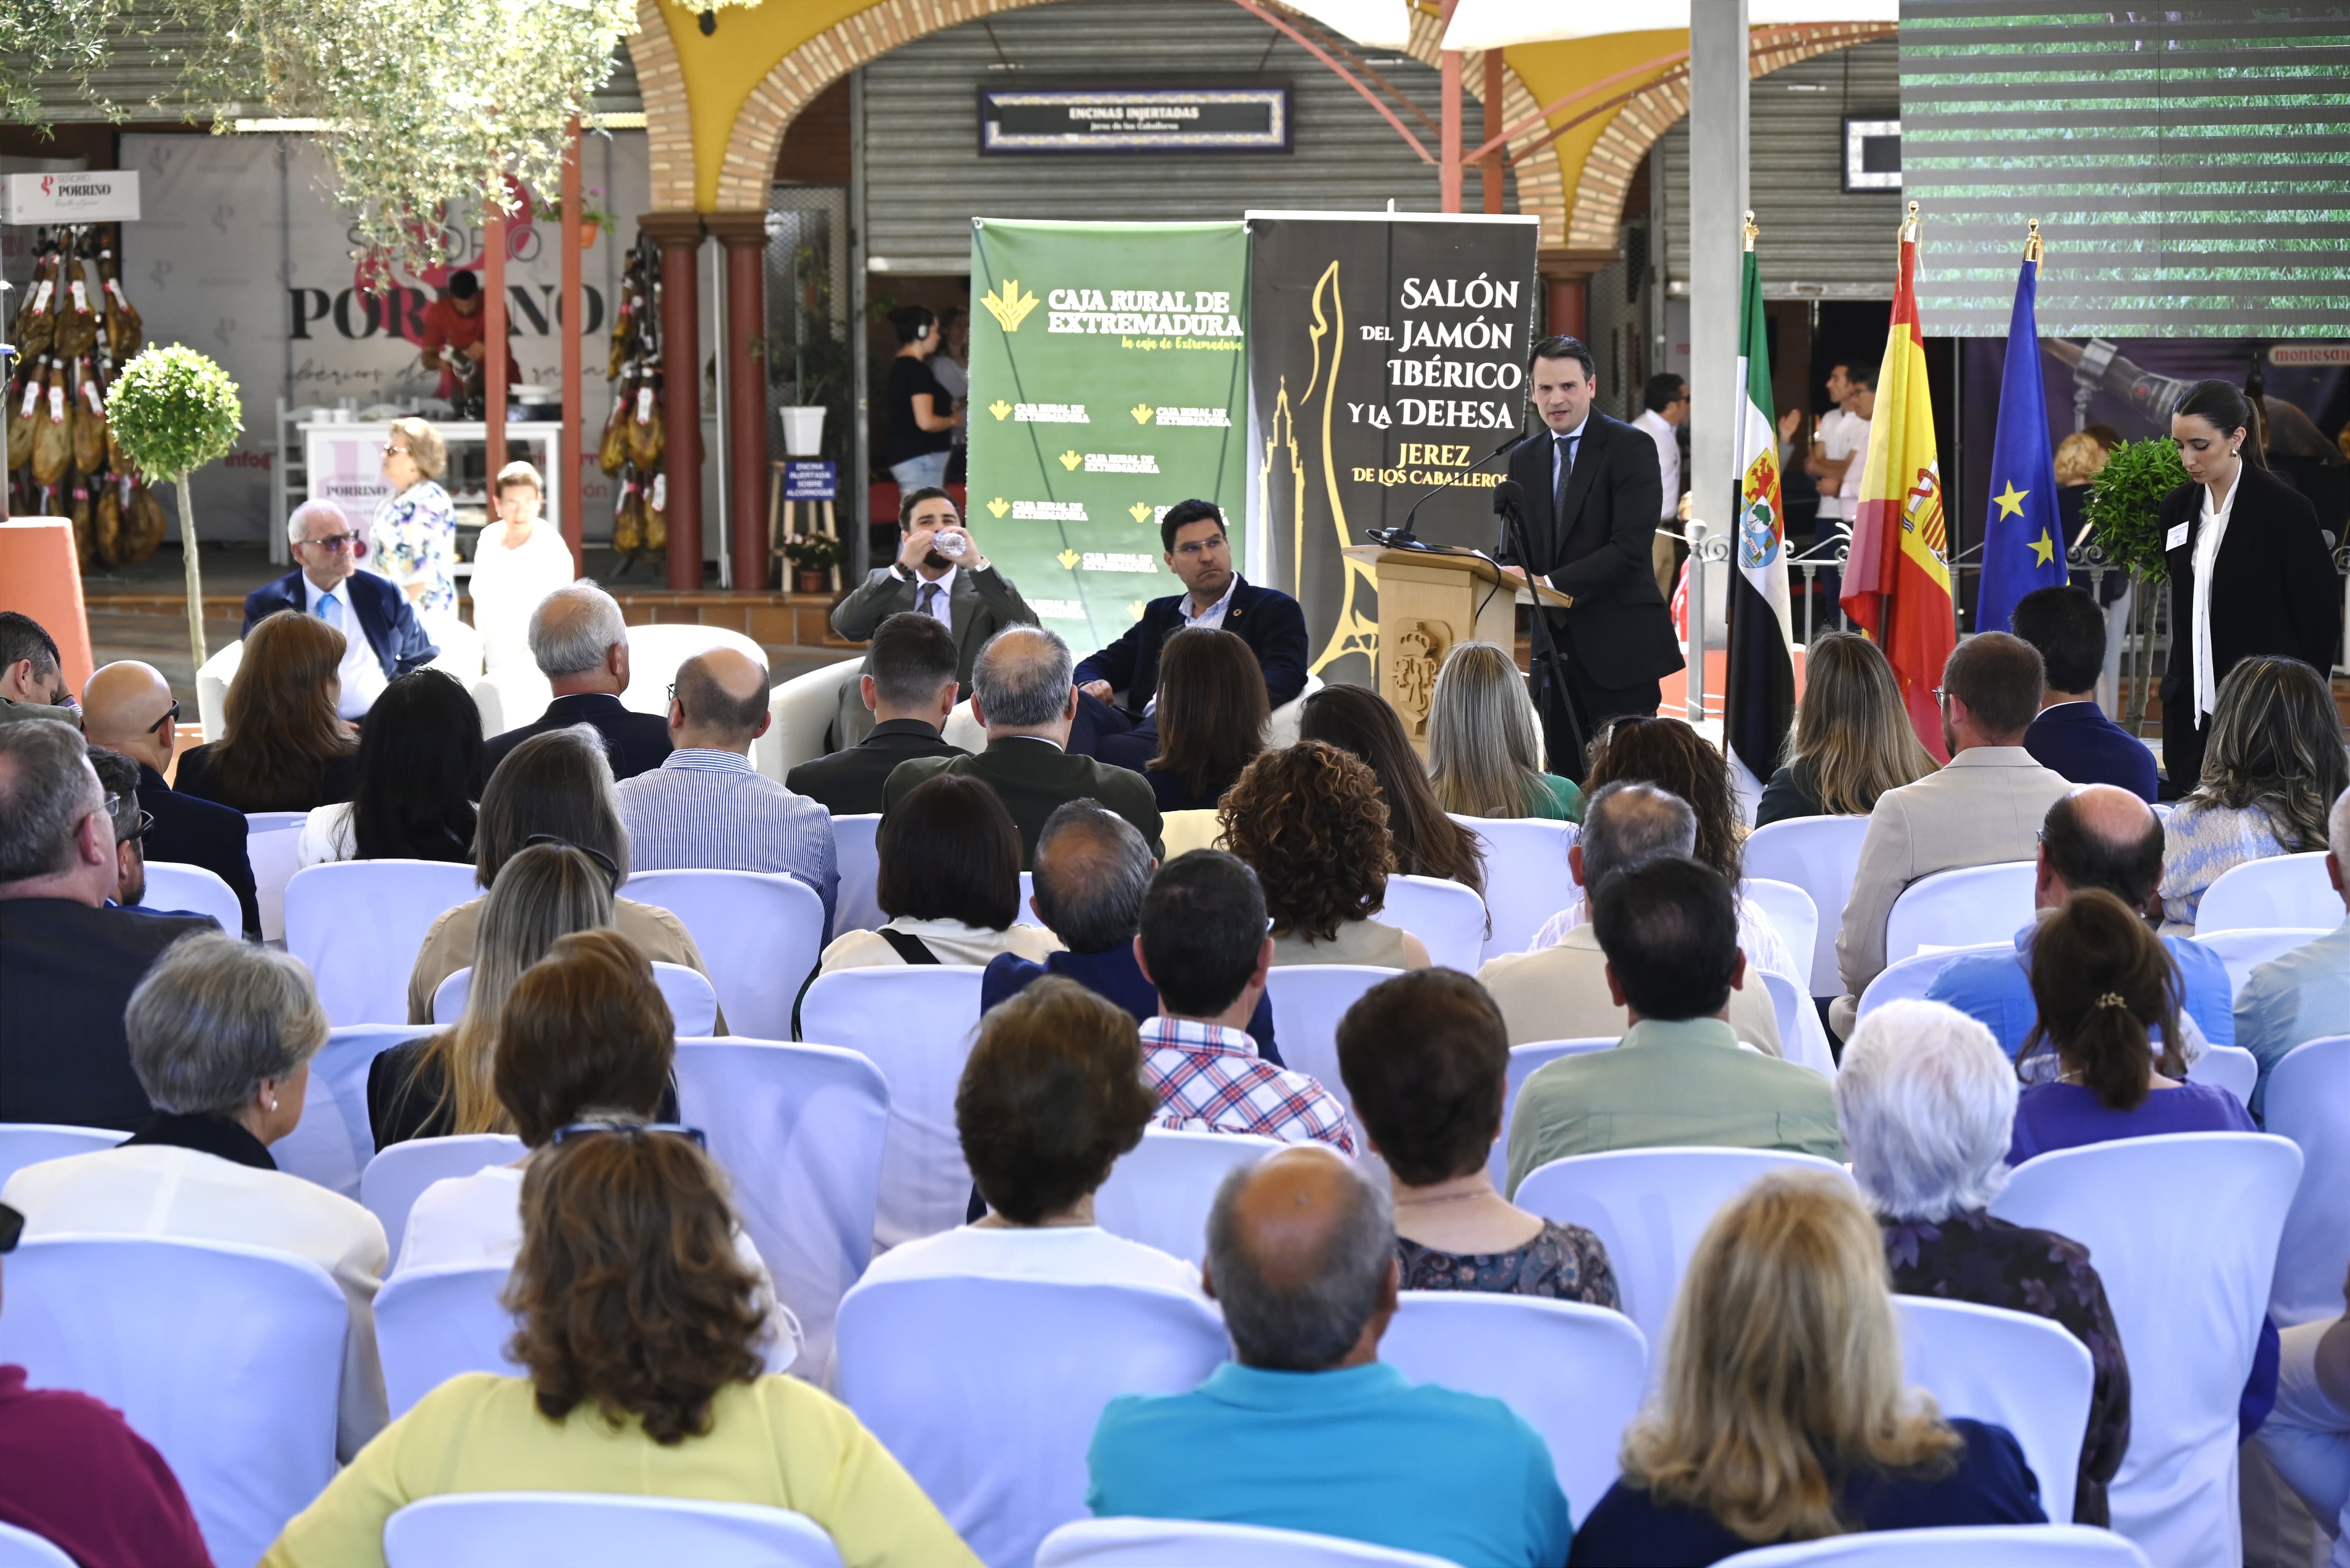 Image 4 of article Abel Bautista destaca la importancia económica del cerdo ibérico en Extremadura en la inauguración del Salón del Jamón